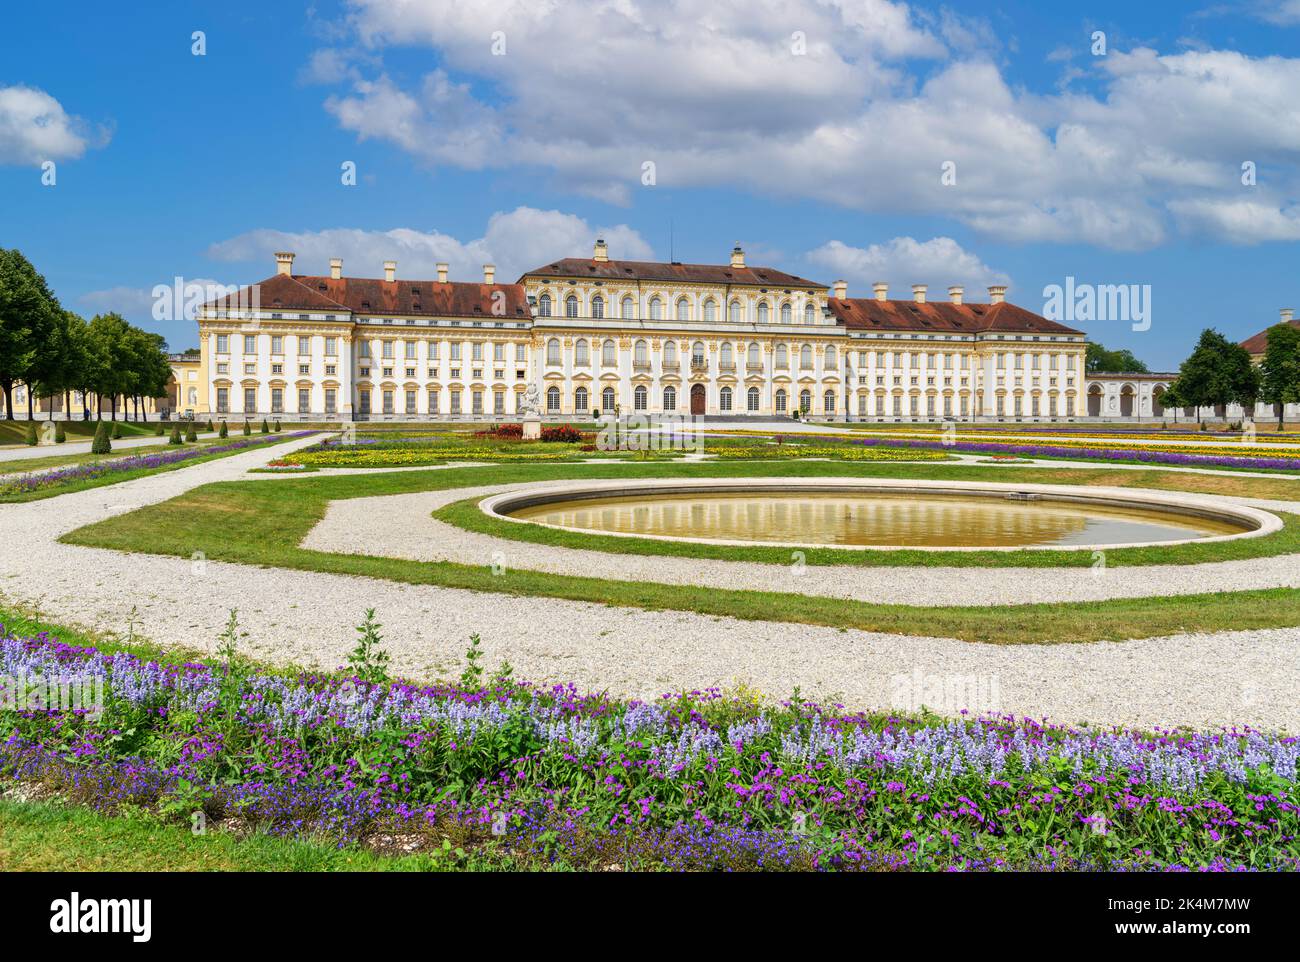 Neues Schloss Schleißheim, complexe du palais de Schleissheim, Munich, Bavière, Allemagne Banque D'Images